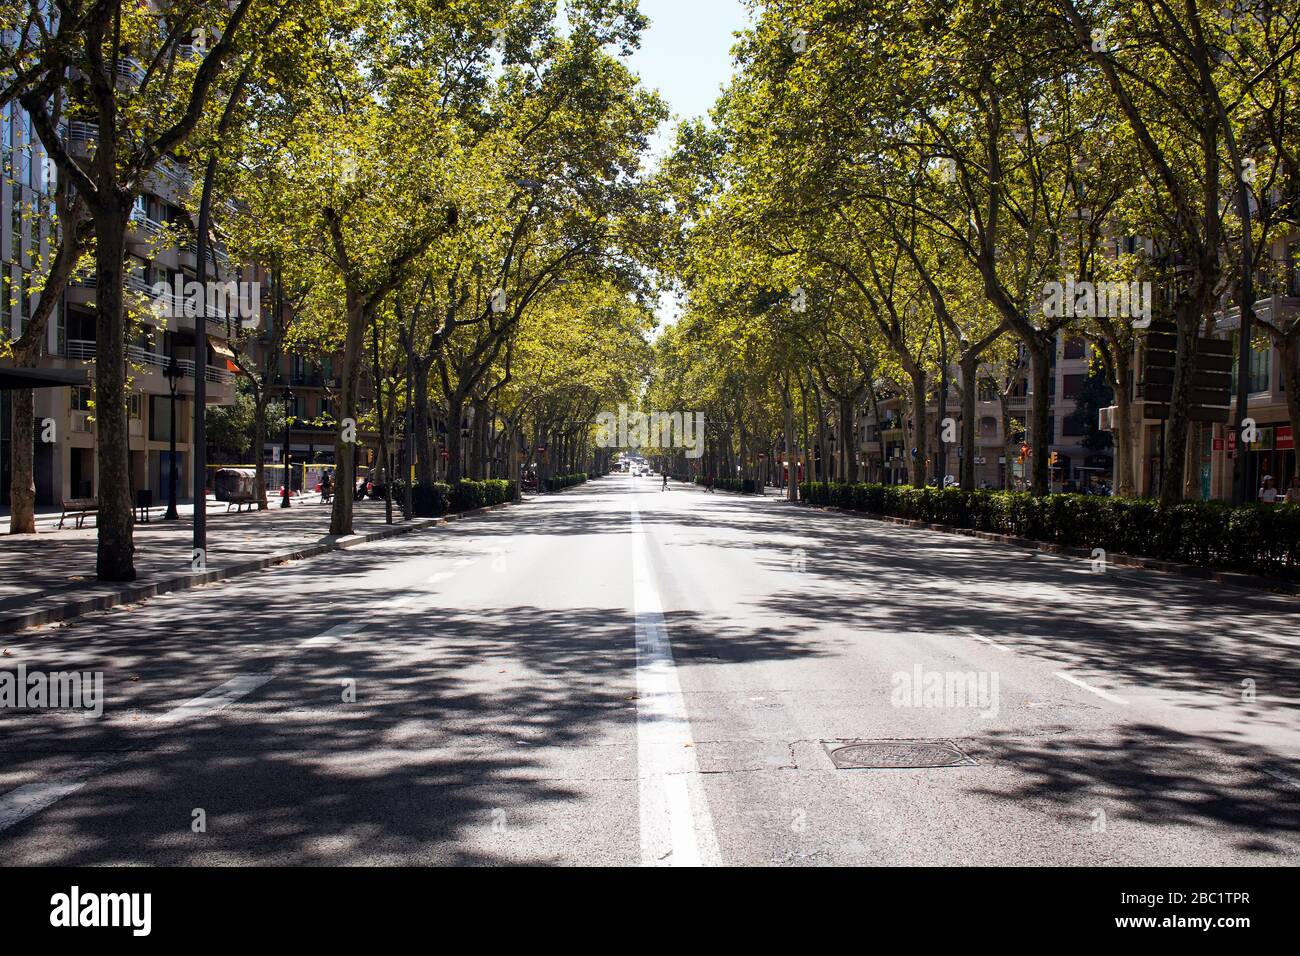 Vista de una de las principales avenidas de Barcelona llamada "Gran Via de les Corts Catalanes". Los árboles y sus sombras crean una escena dramática. Es un sol s Foto de stock